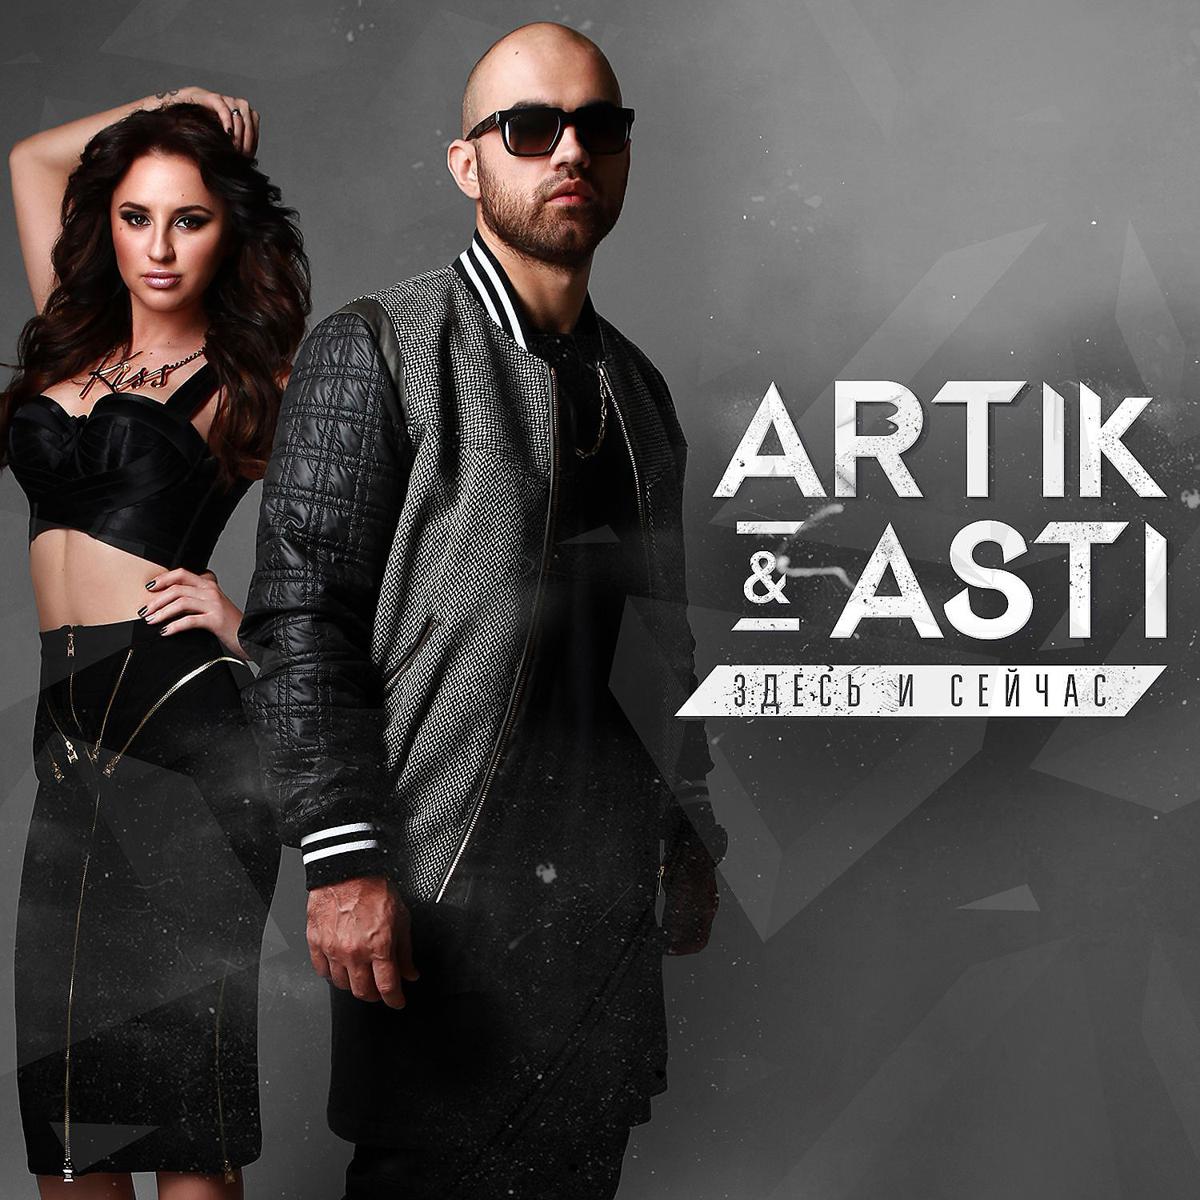 Слушать топ новинок музыки. Артик и Асти. Artik Asti здесь и сейчас 2015. Artik Asti обложка. Артик и Асти 2014.